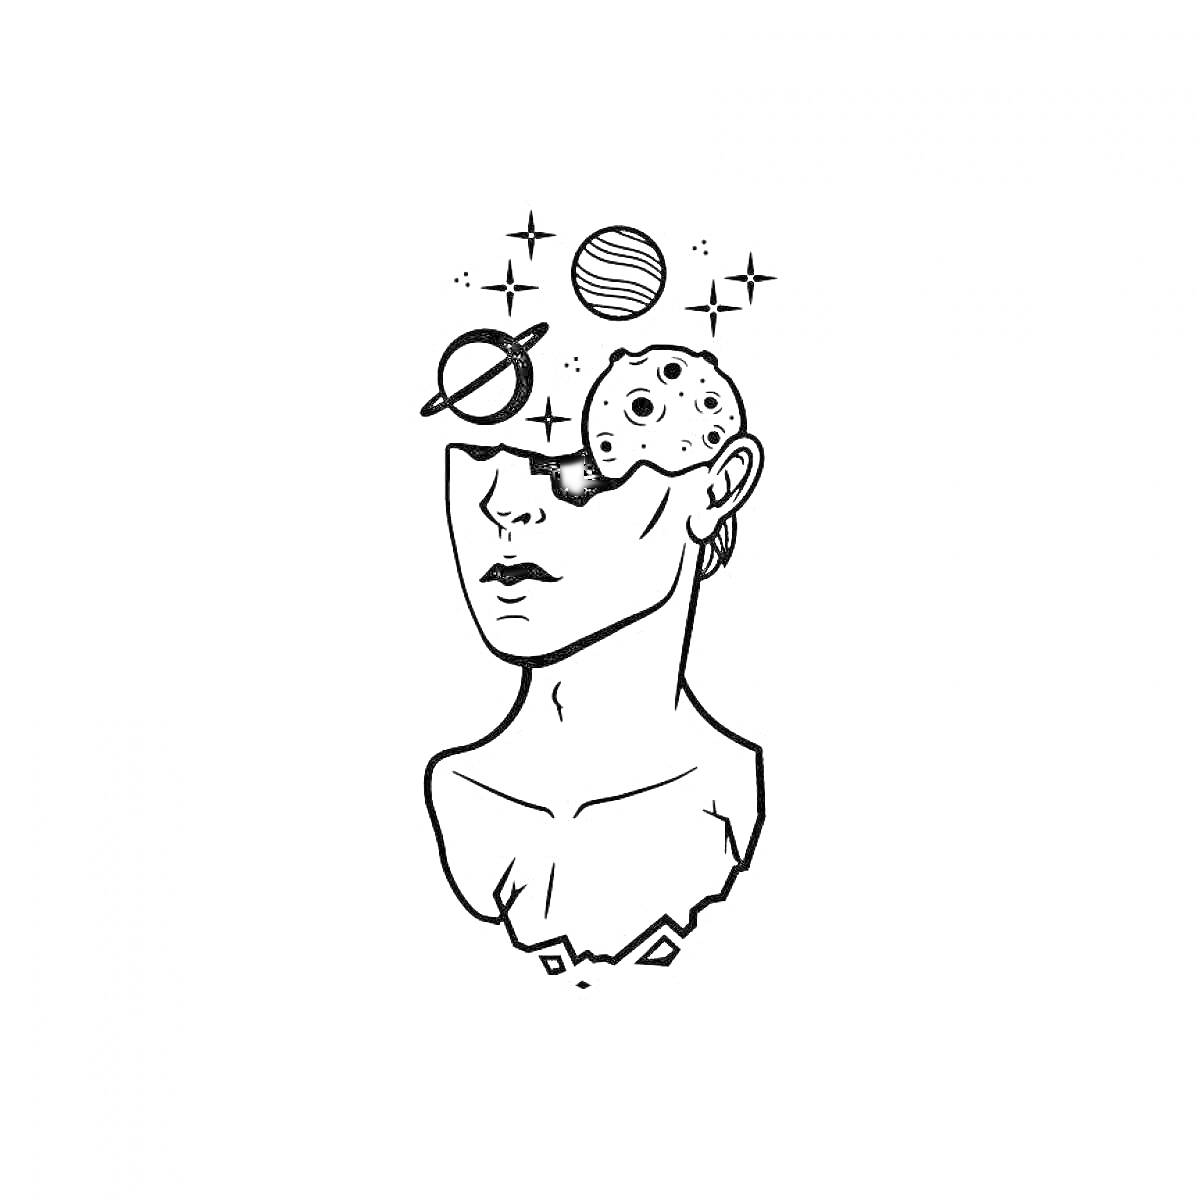 Раскраска Портрет с планетами и звездами. Голова человека с открытым черепом, откуда выходят планеты и звезды.